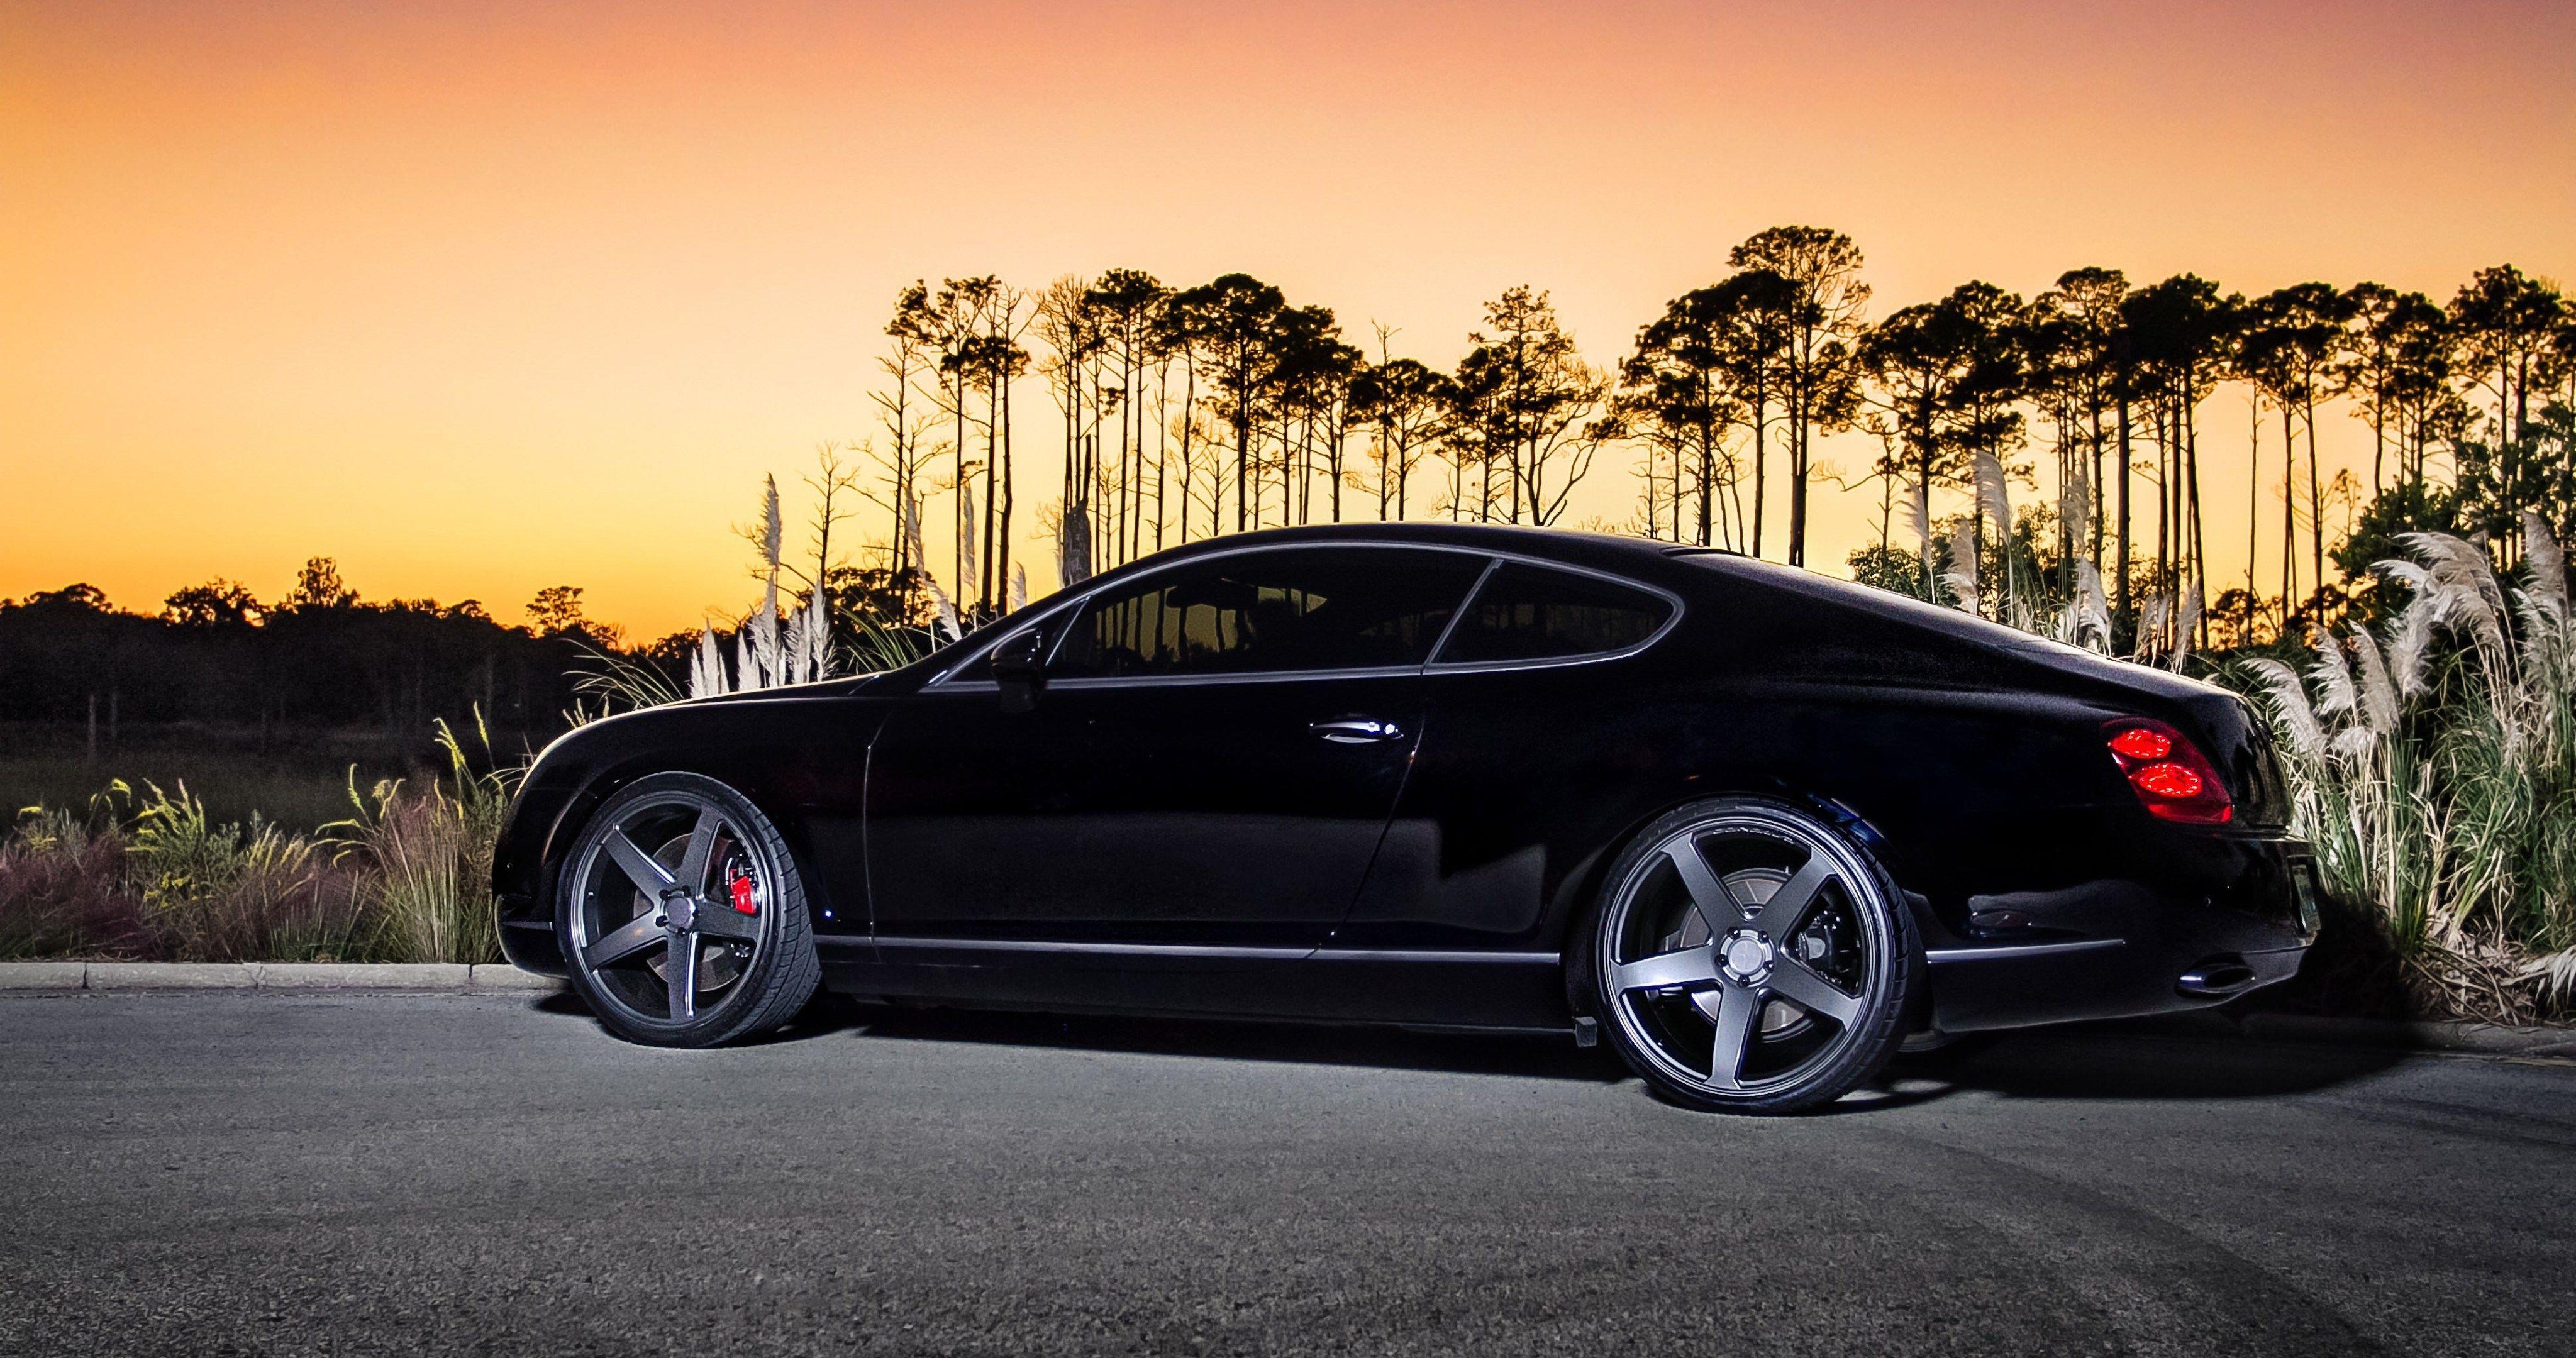 Hình nền 4096x2160 b Bentley Continental gt Hình nền 4k cực HD.  Hình nền Bentley, Hình nền HD màu đen, Black b Bentley